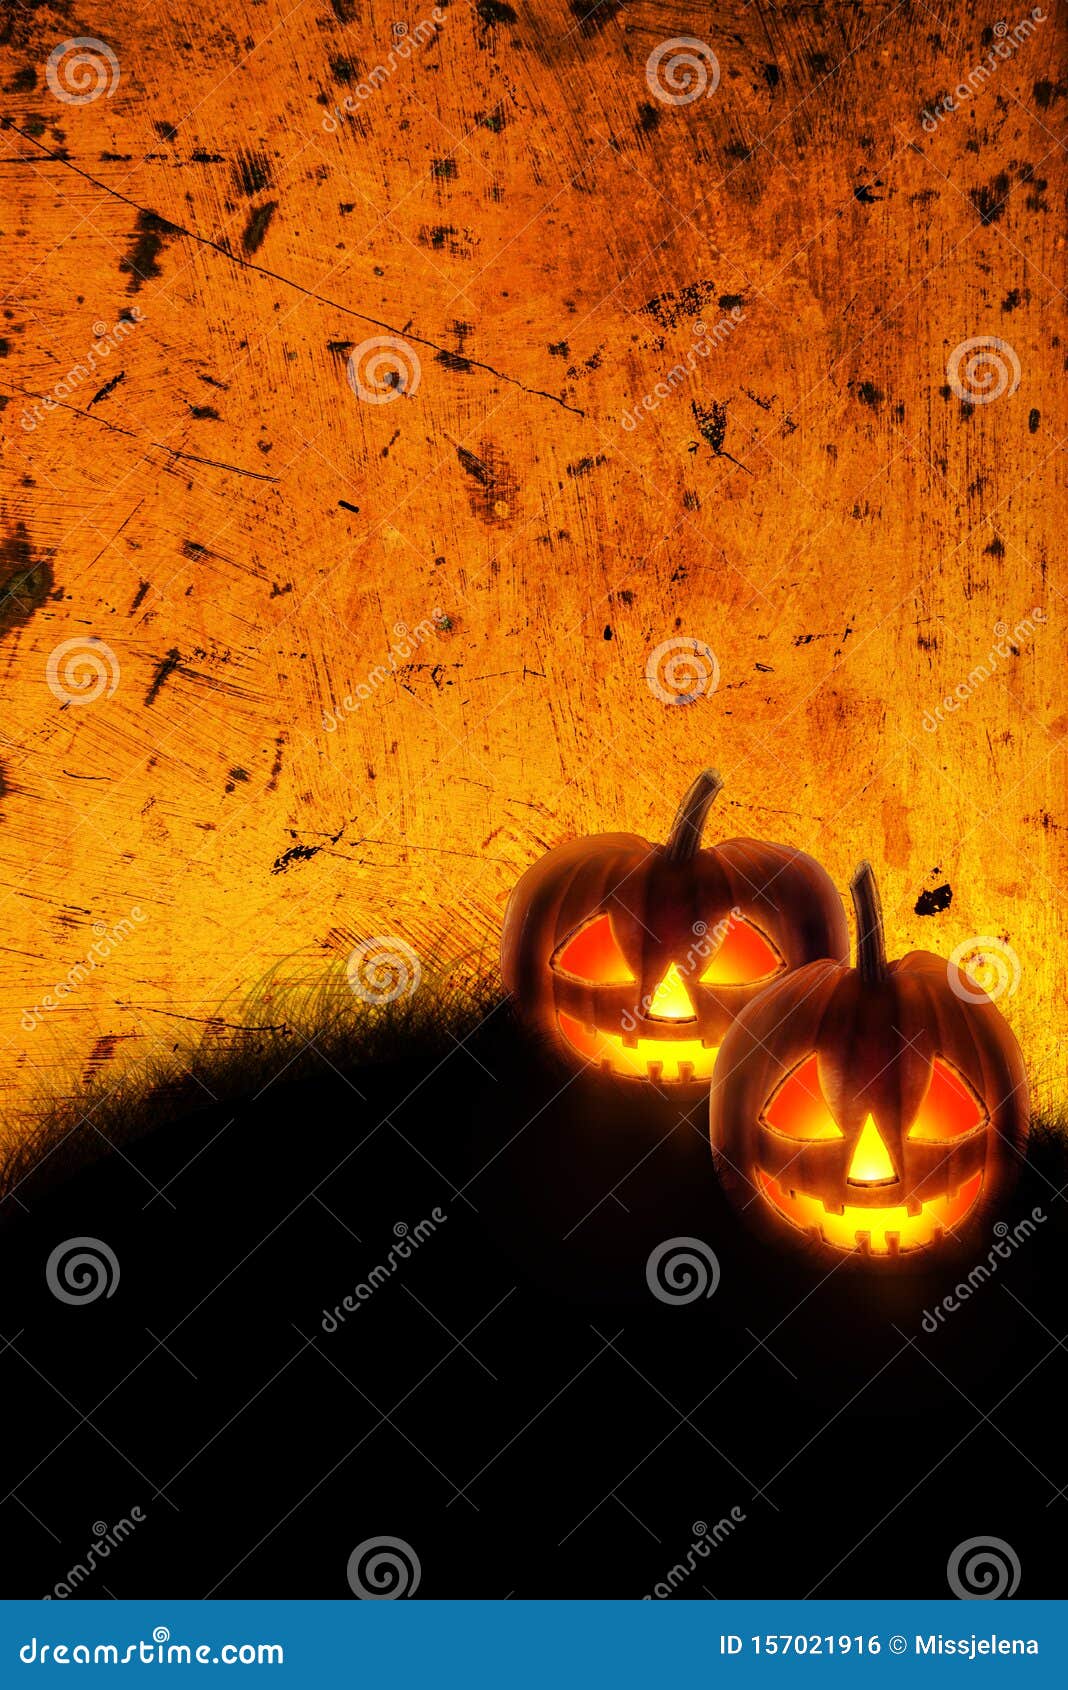 HD scary pumpkin wallpapers  Peakpx